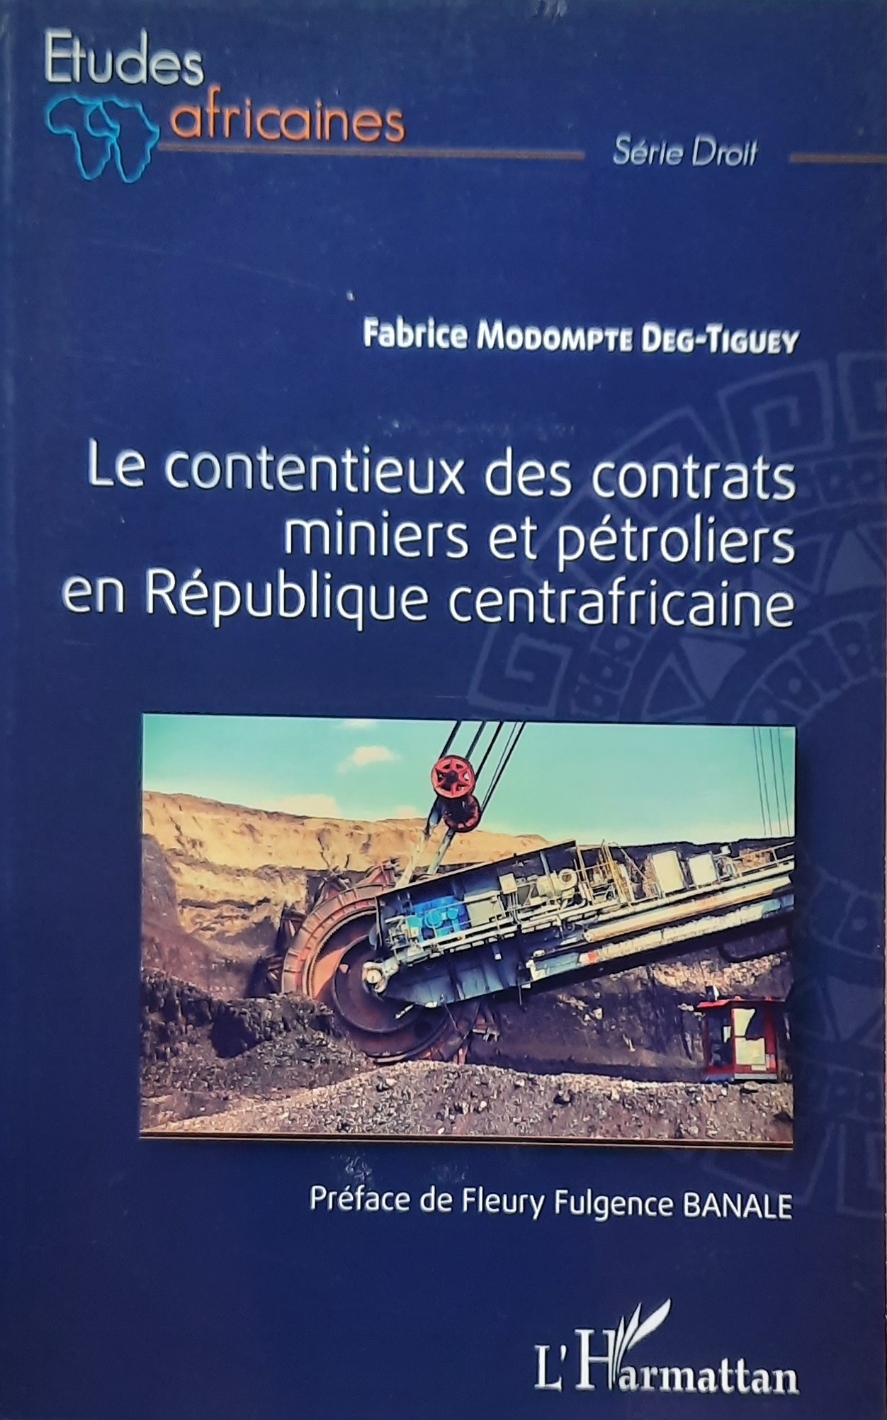 Book cover 202105320078: MODOMPTE DEG-TIGUEY Fabrice | Le contentieux des contrats miniers et pétroliers en République centrafricaine